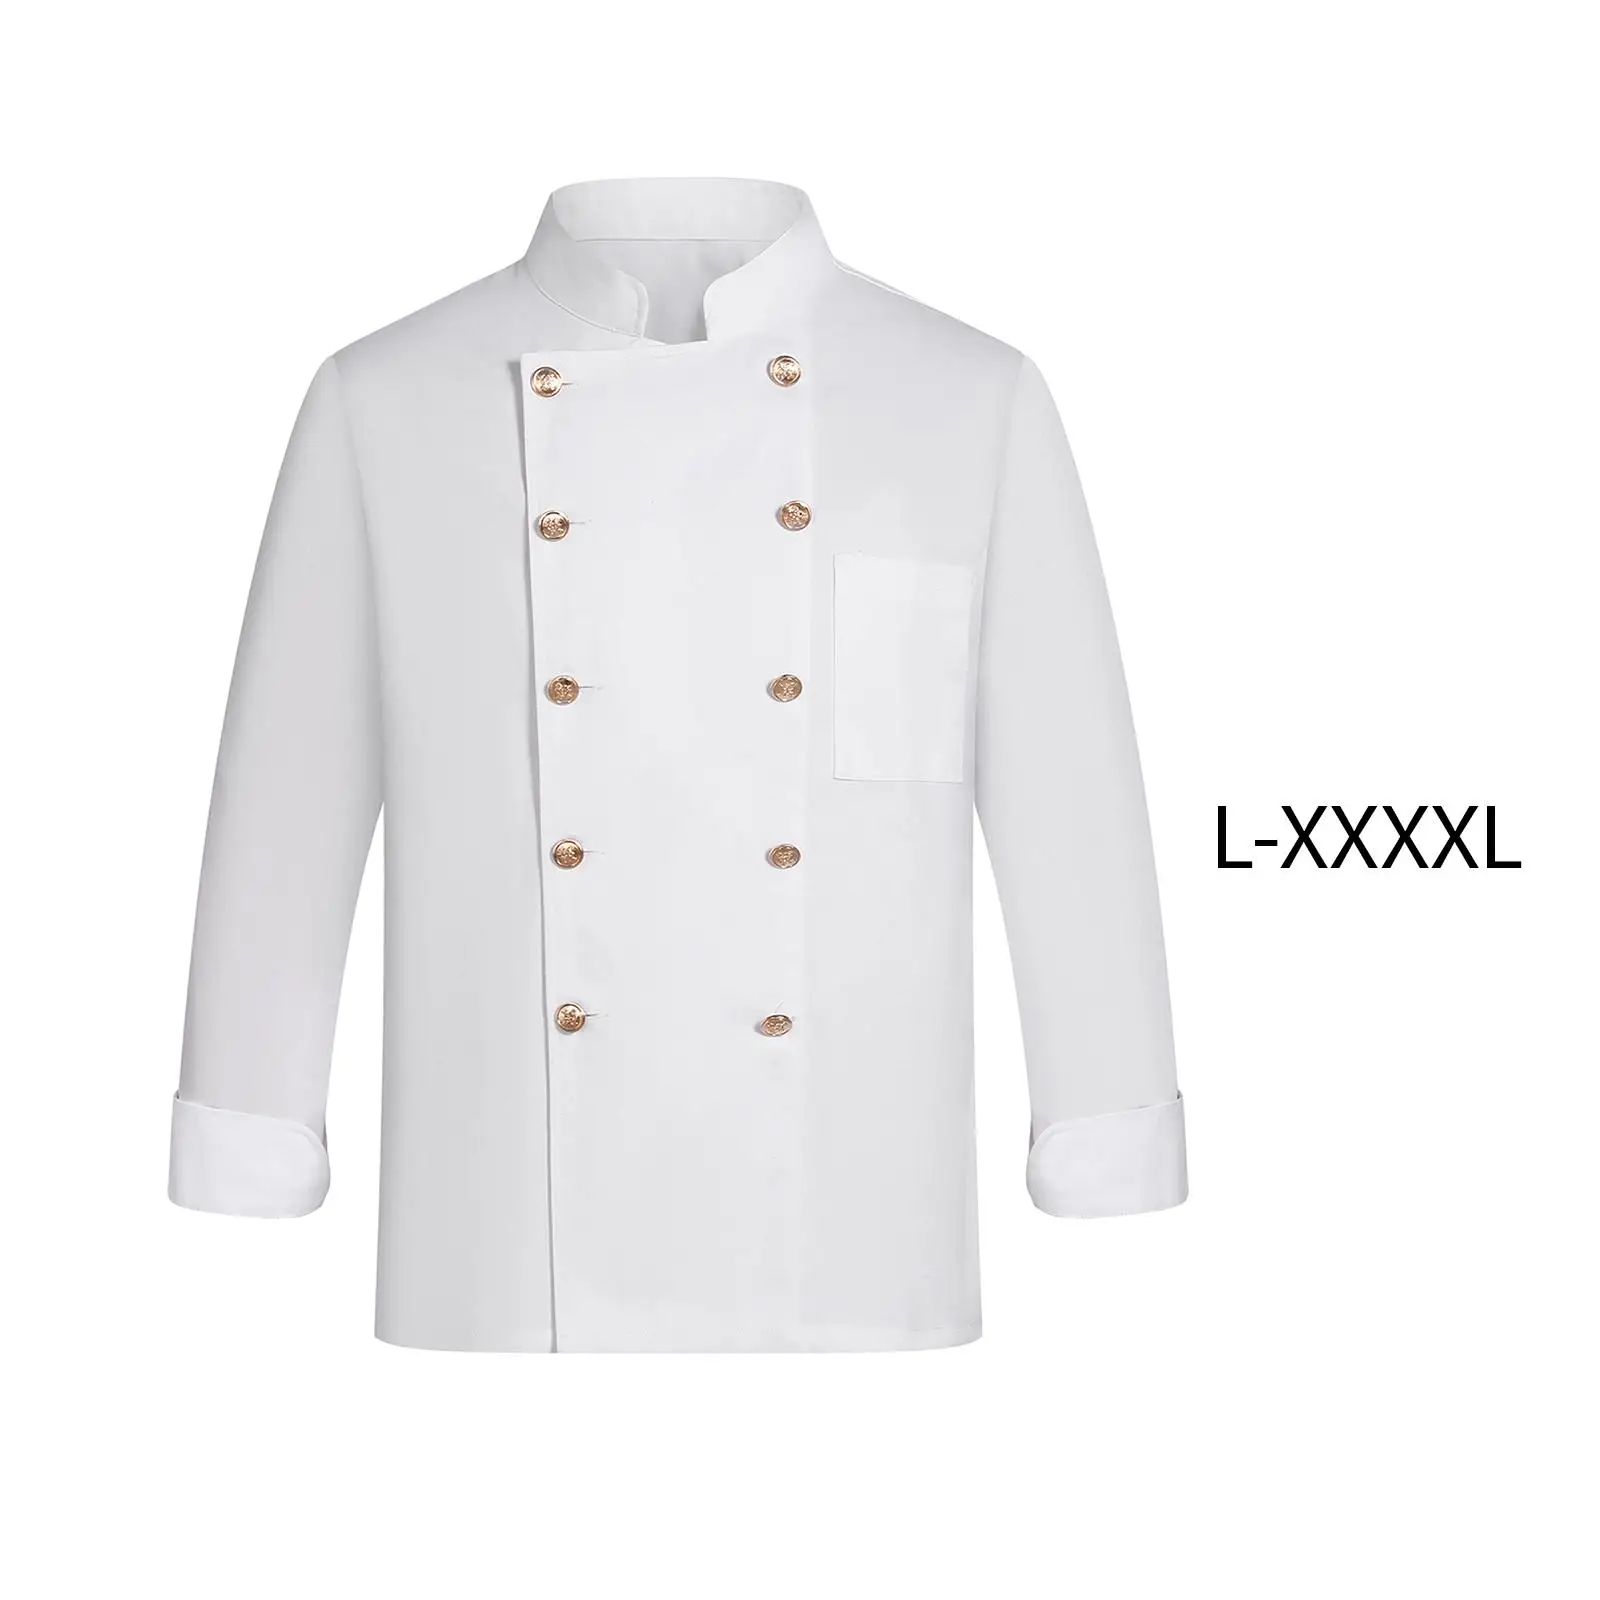 Universal Chef Clothes Sweat Absorption Work Wear Jacket Chef restaurant